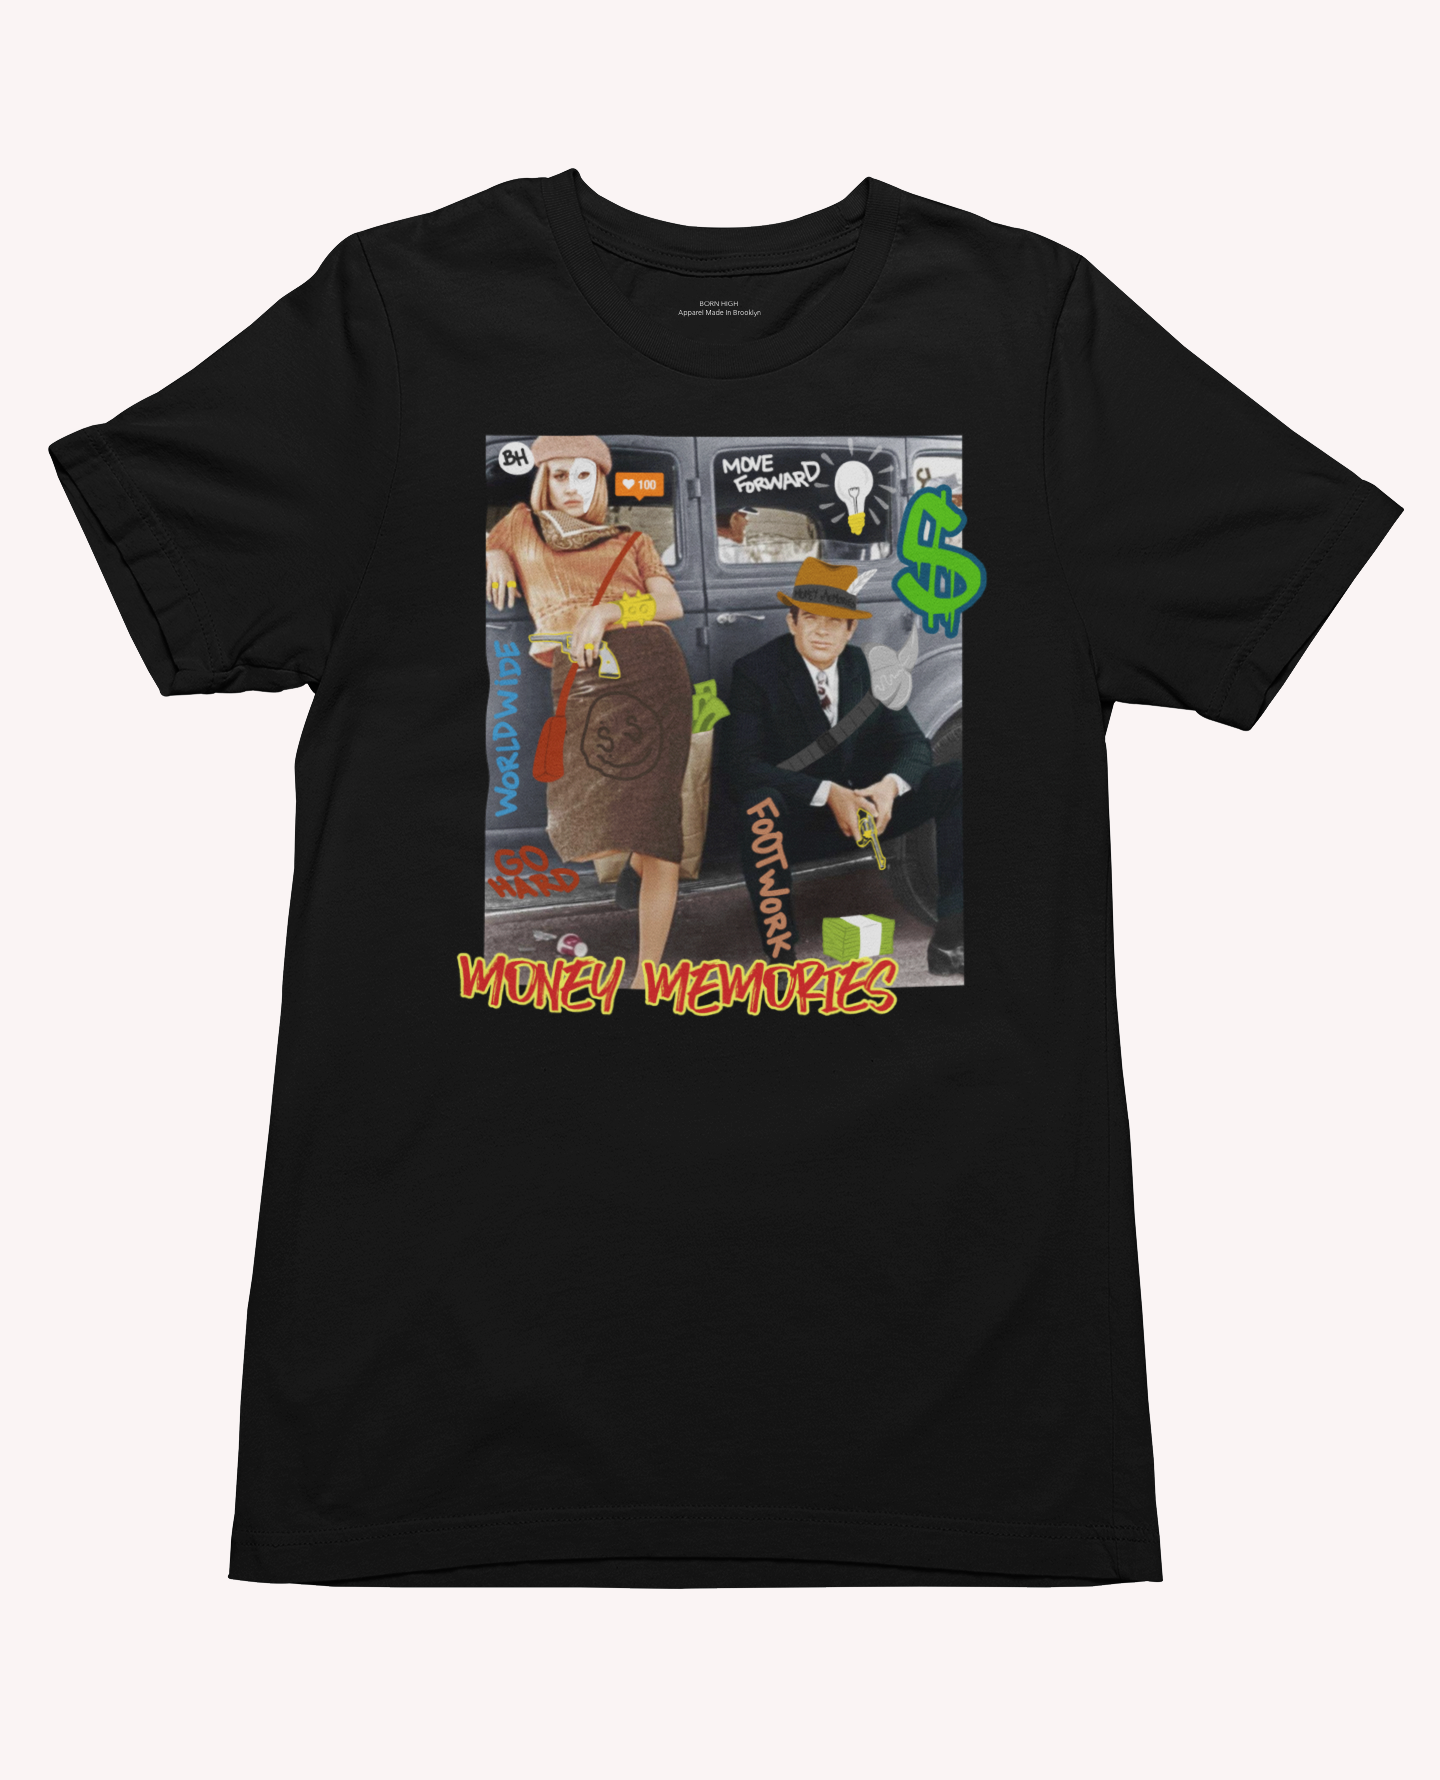 Money Memories Bonnie & Clyde T-Shirt Black